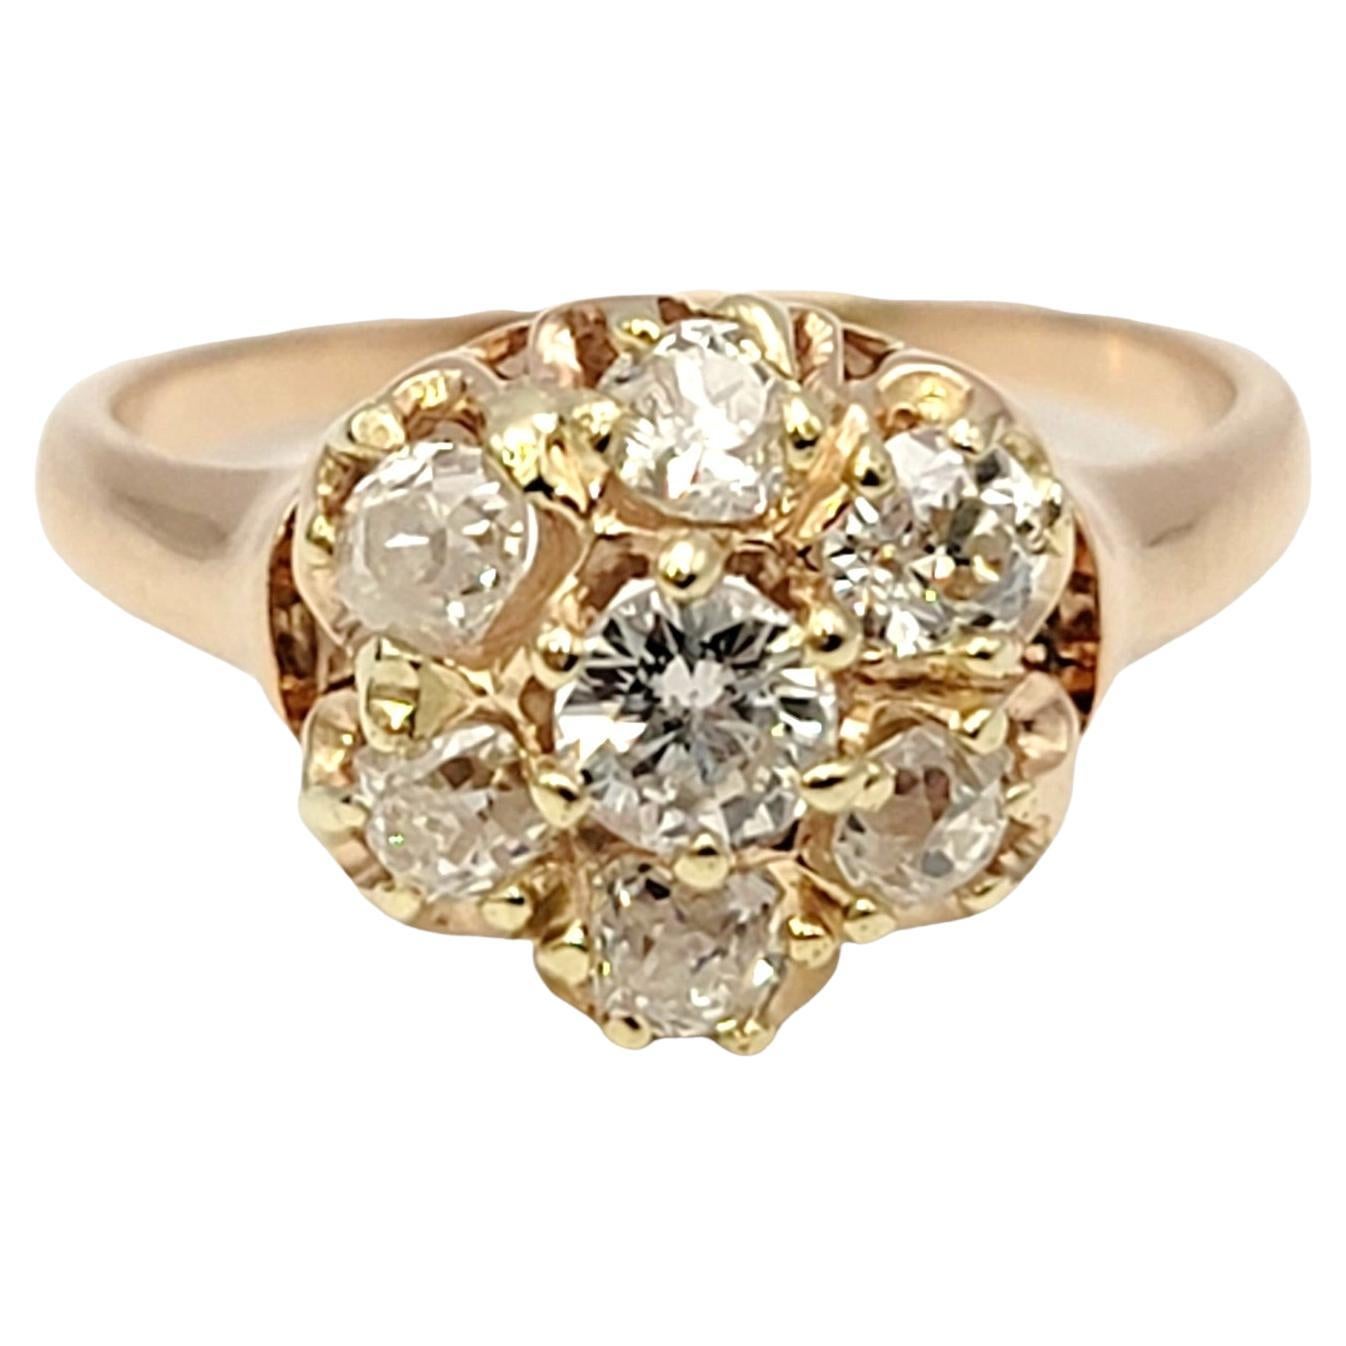 Taille de l'anneau : 4.5

Cette bague vintage romantique présente 7 incroyables diamants de taille Old European sertis en grappe arrondie au centre de l'anneau, formant un motif de style floral. Décalées par une délicate tige en or jaune, les